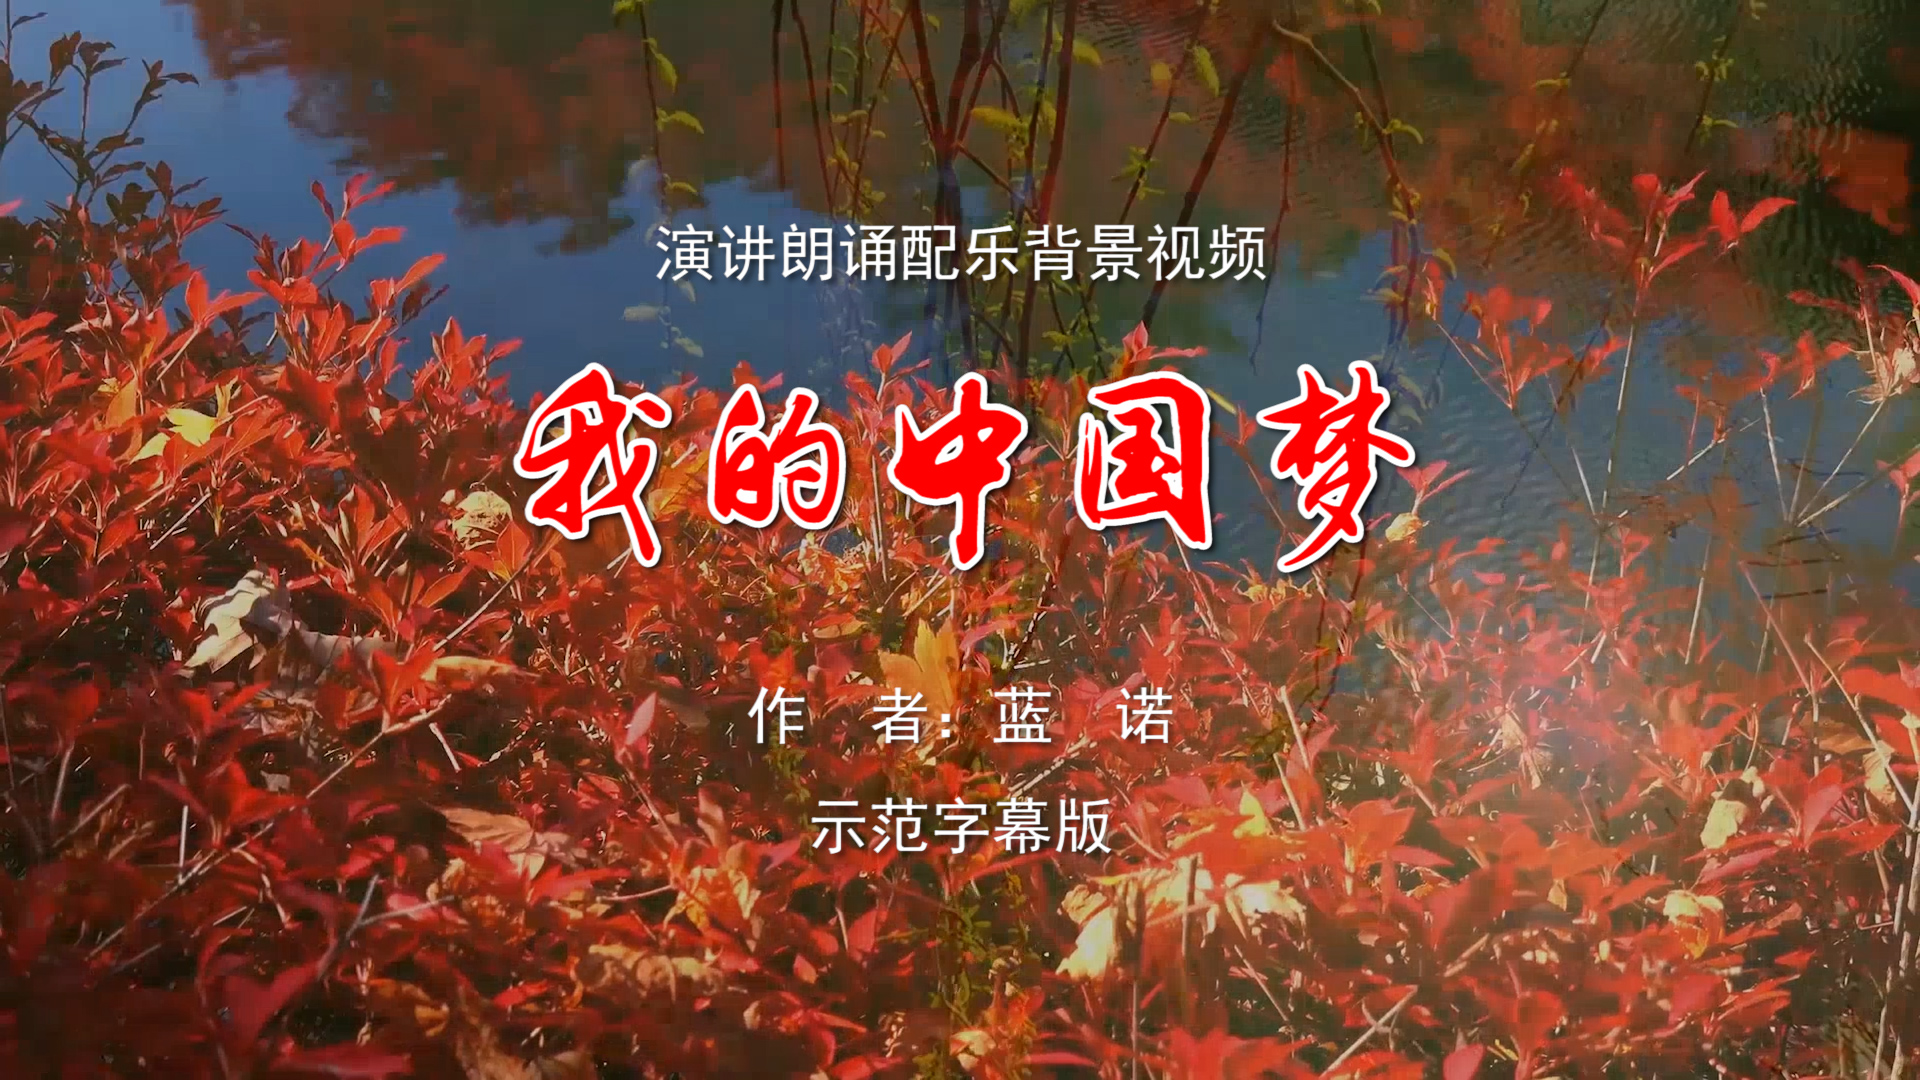 我的中国梦 诗歌朗诵配乐伴奏舞台演出LED背景大屏幕视频素材TV